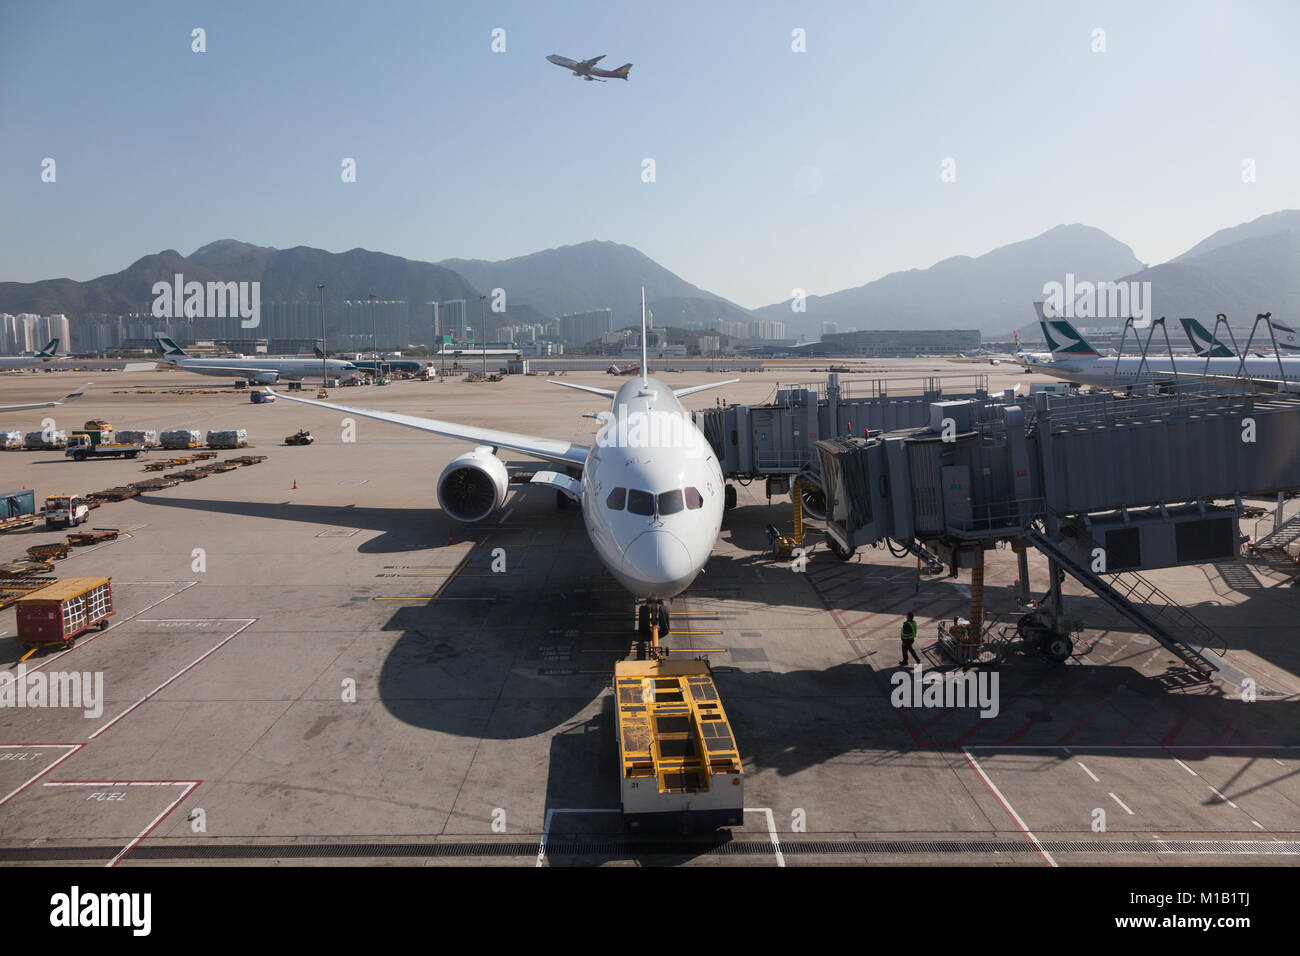 Avions de ligne sur l'aire de trafic et décollant de l'aéroport de Chek Lap Kok, Hong Kong SAR, Chine. Banque D'Images